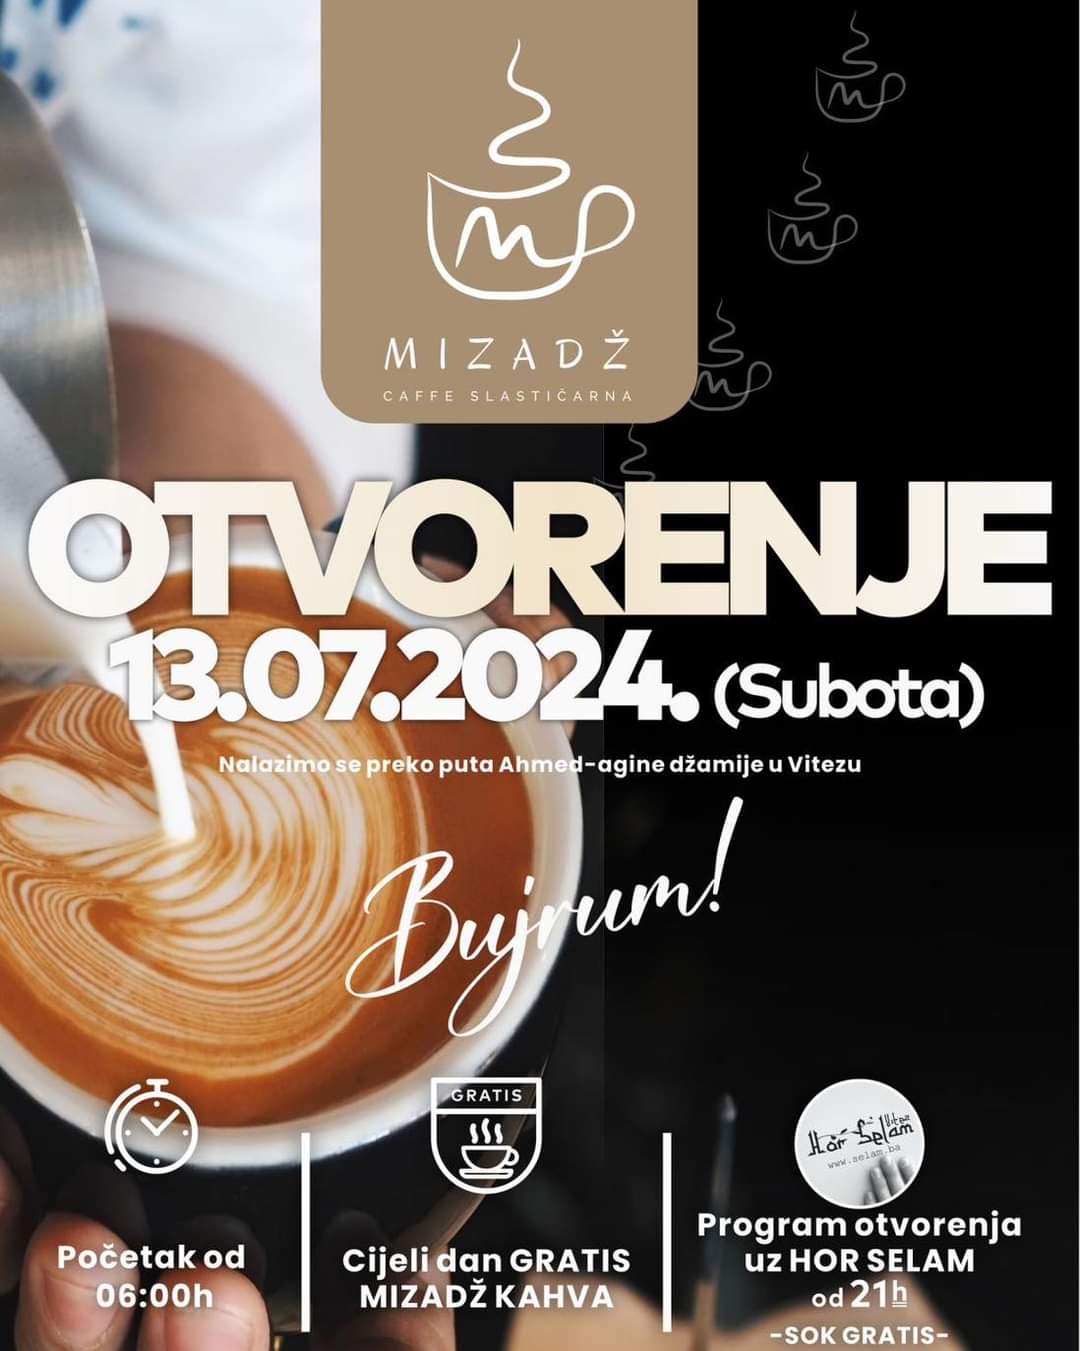 Otvorenje Caffe Slastičarne “Mizadž”